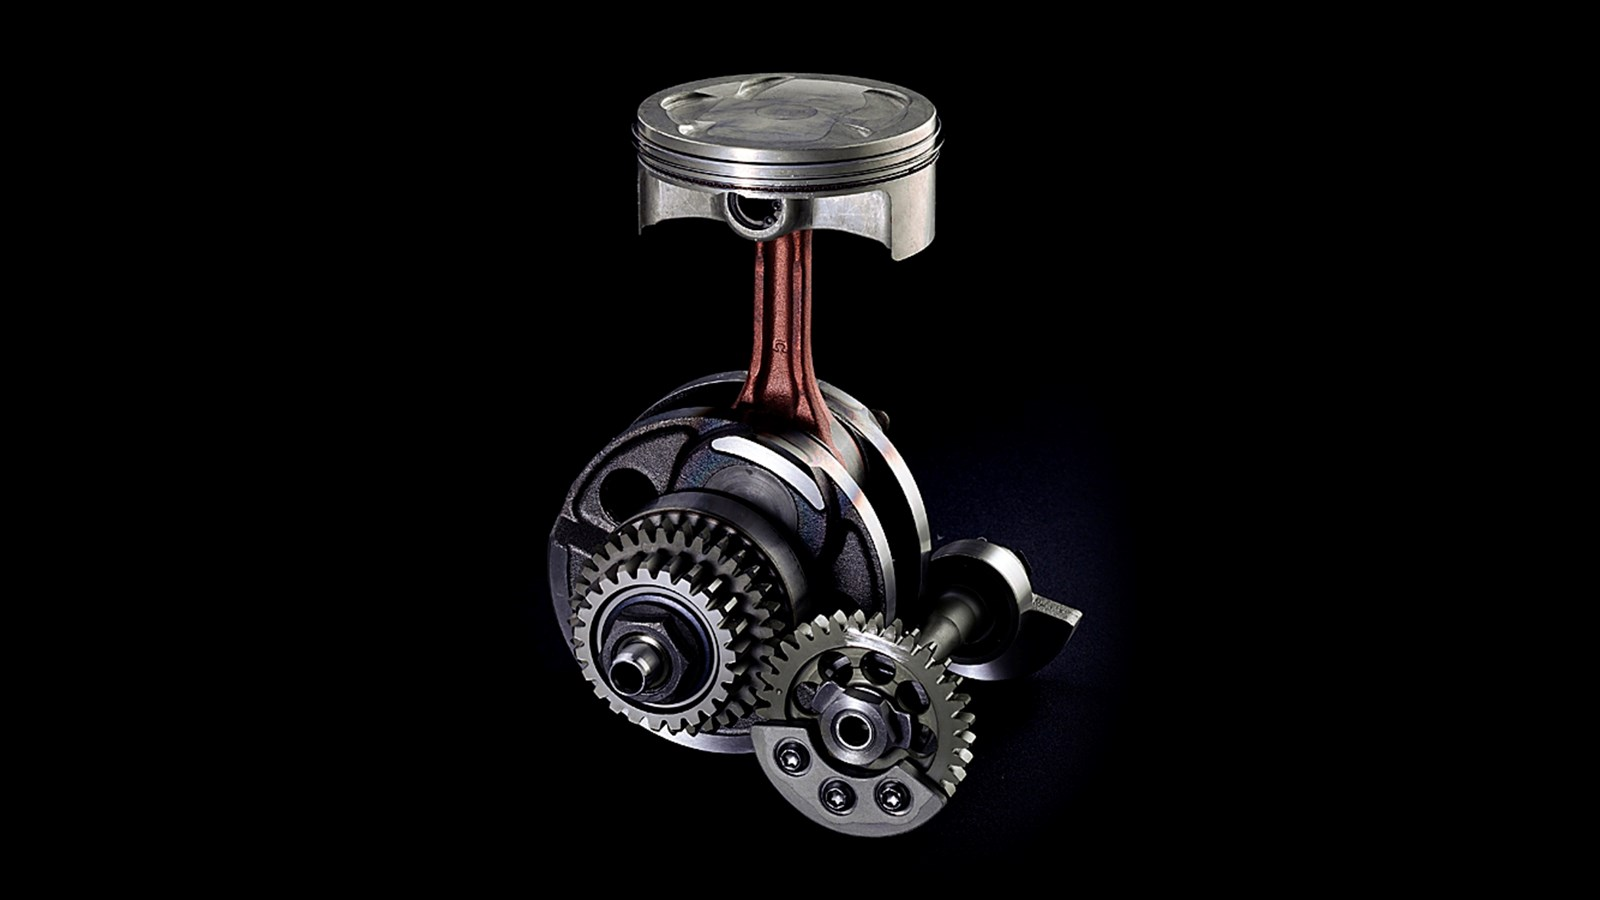 Motor potente O motor monocilíndrico de inclinação frontal, refrigeração líquida, a 4 tempos, DOHC, de 5 válvulas tem um elevado binário e atinge altas rotações.